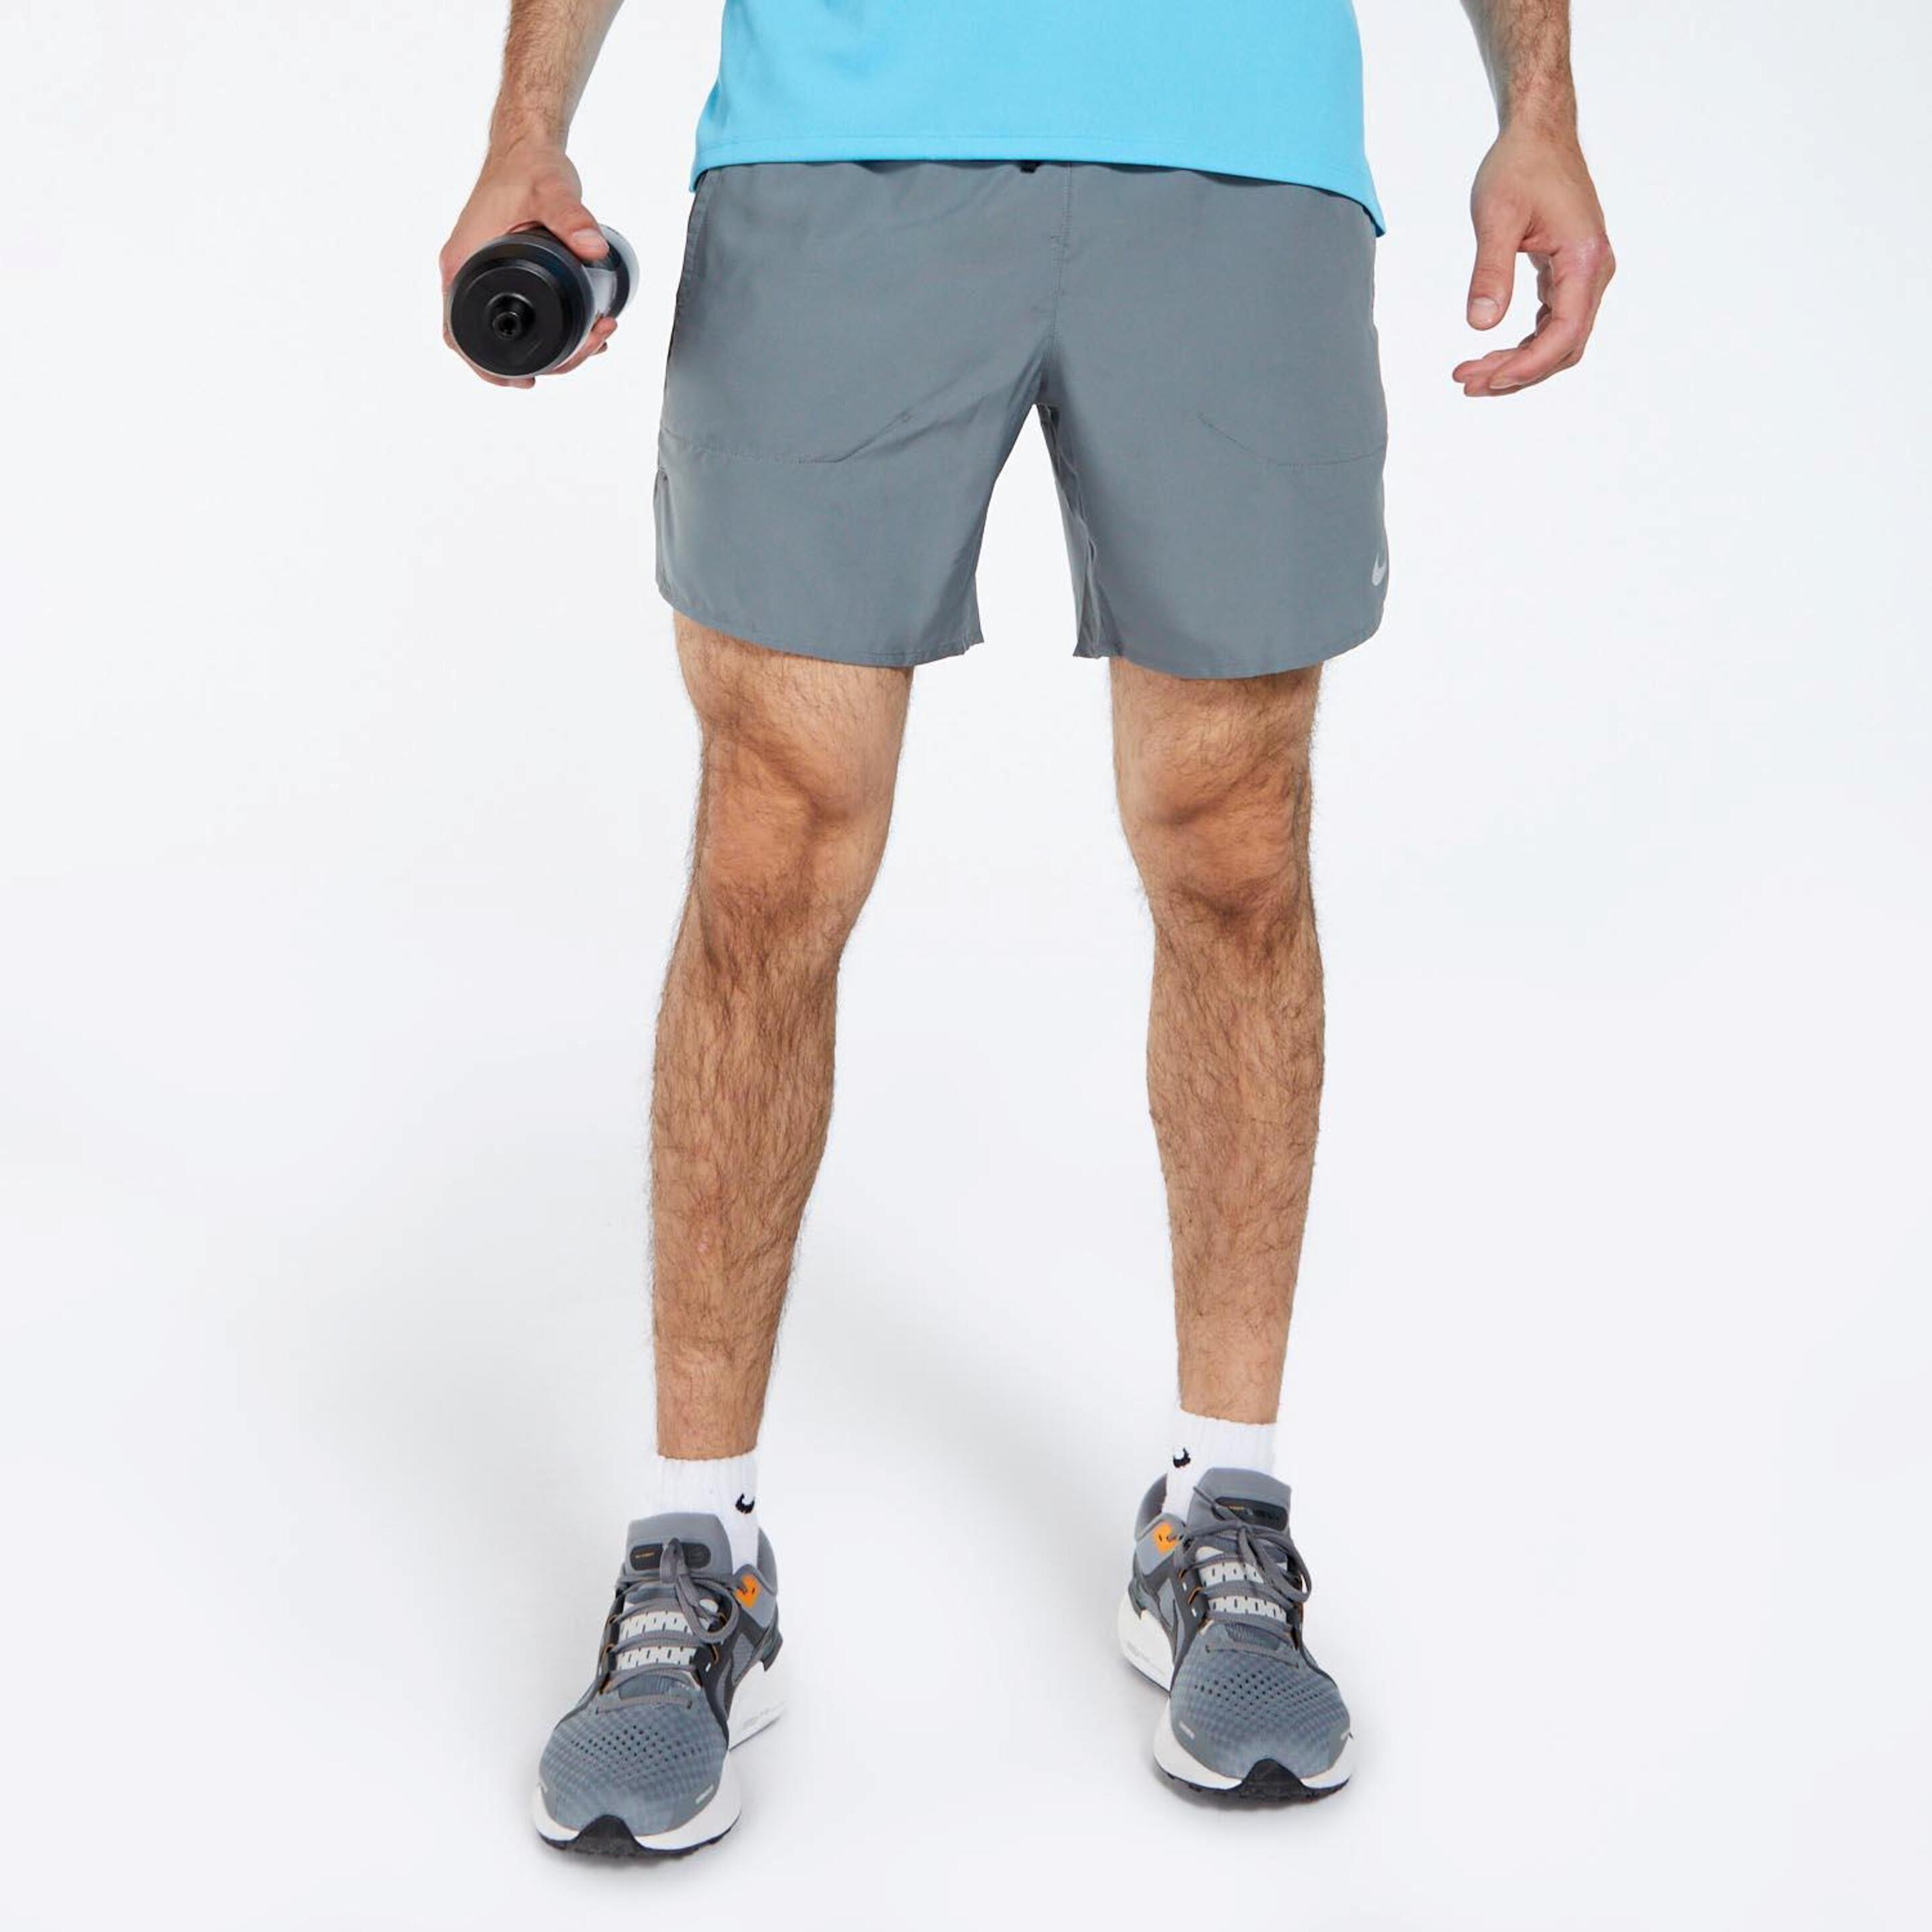 Nike Stride - gris - Calções Running Homem